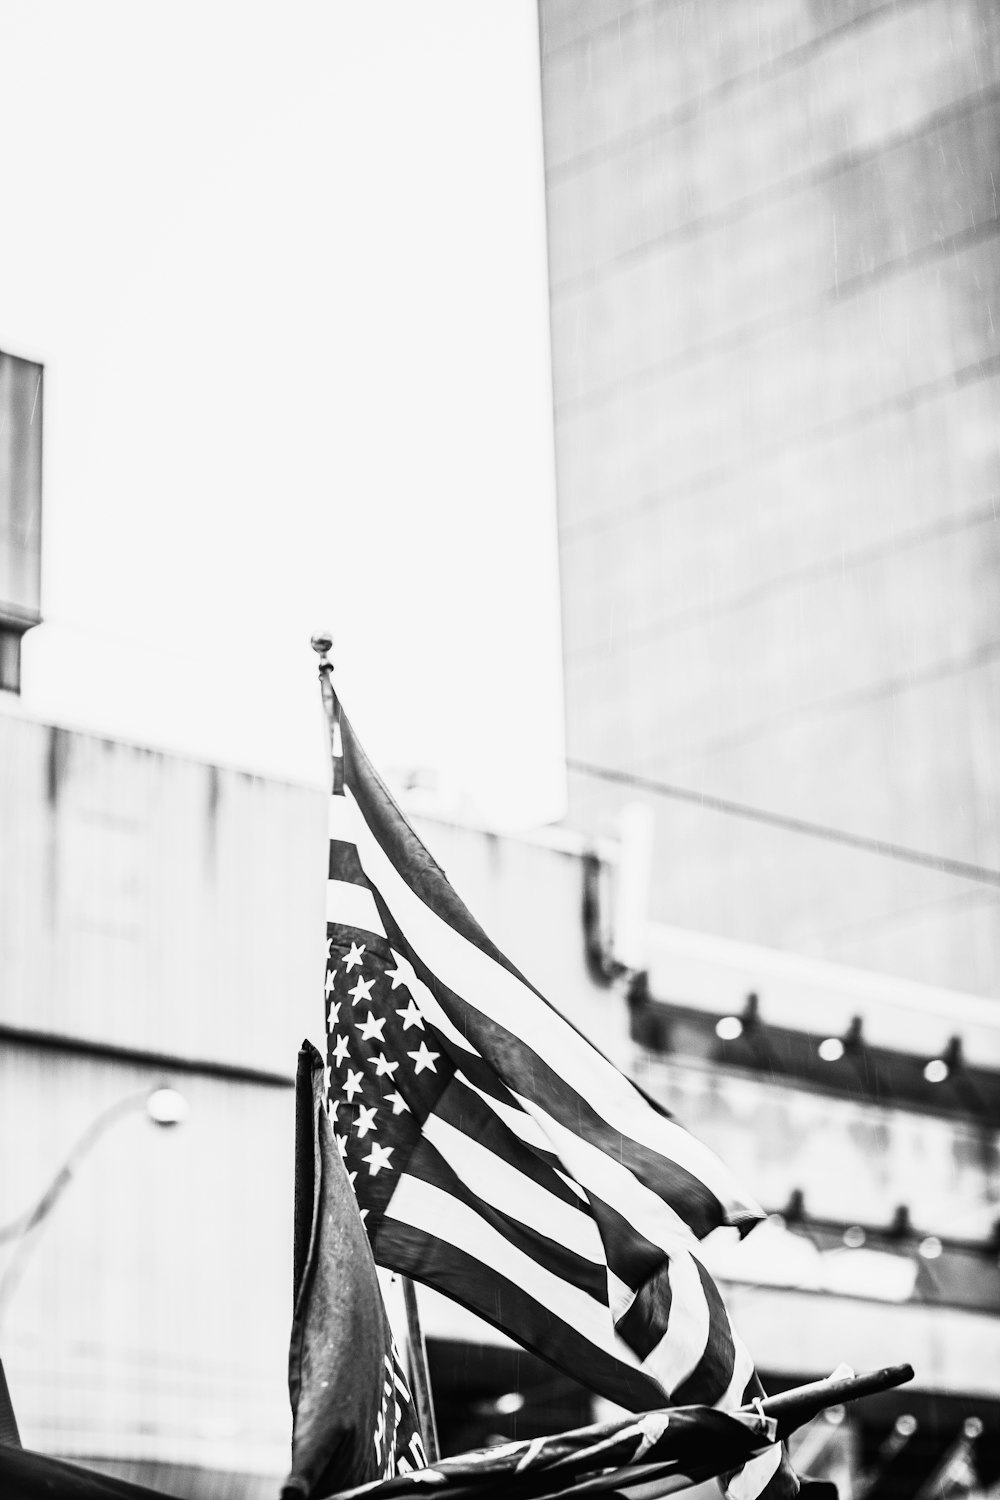 fotografia in scala di grigi della bandiera degli Stati Uniti